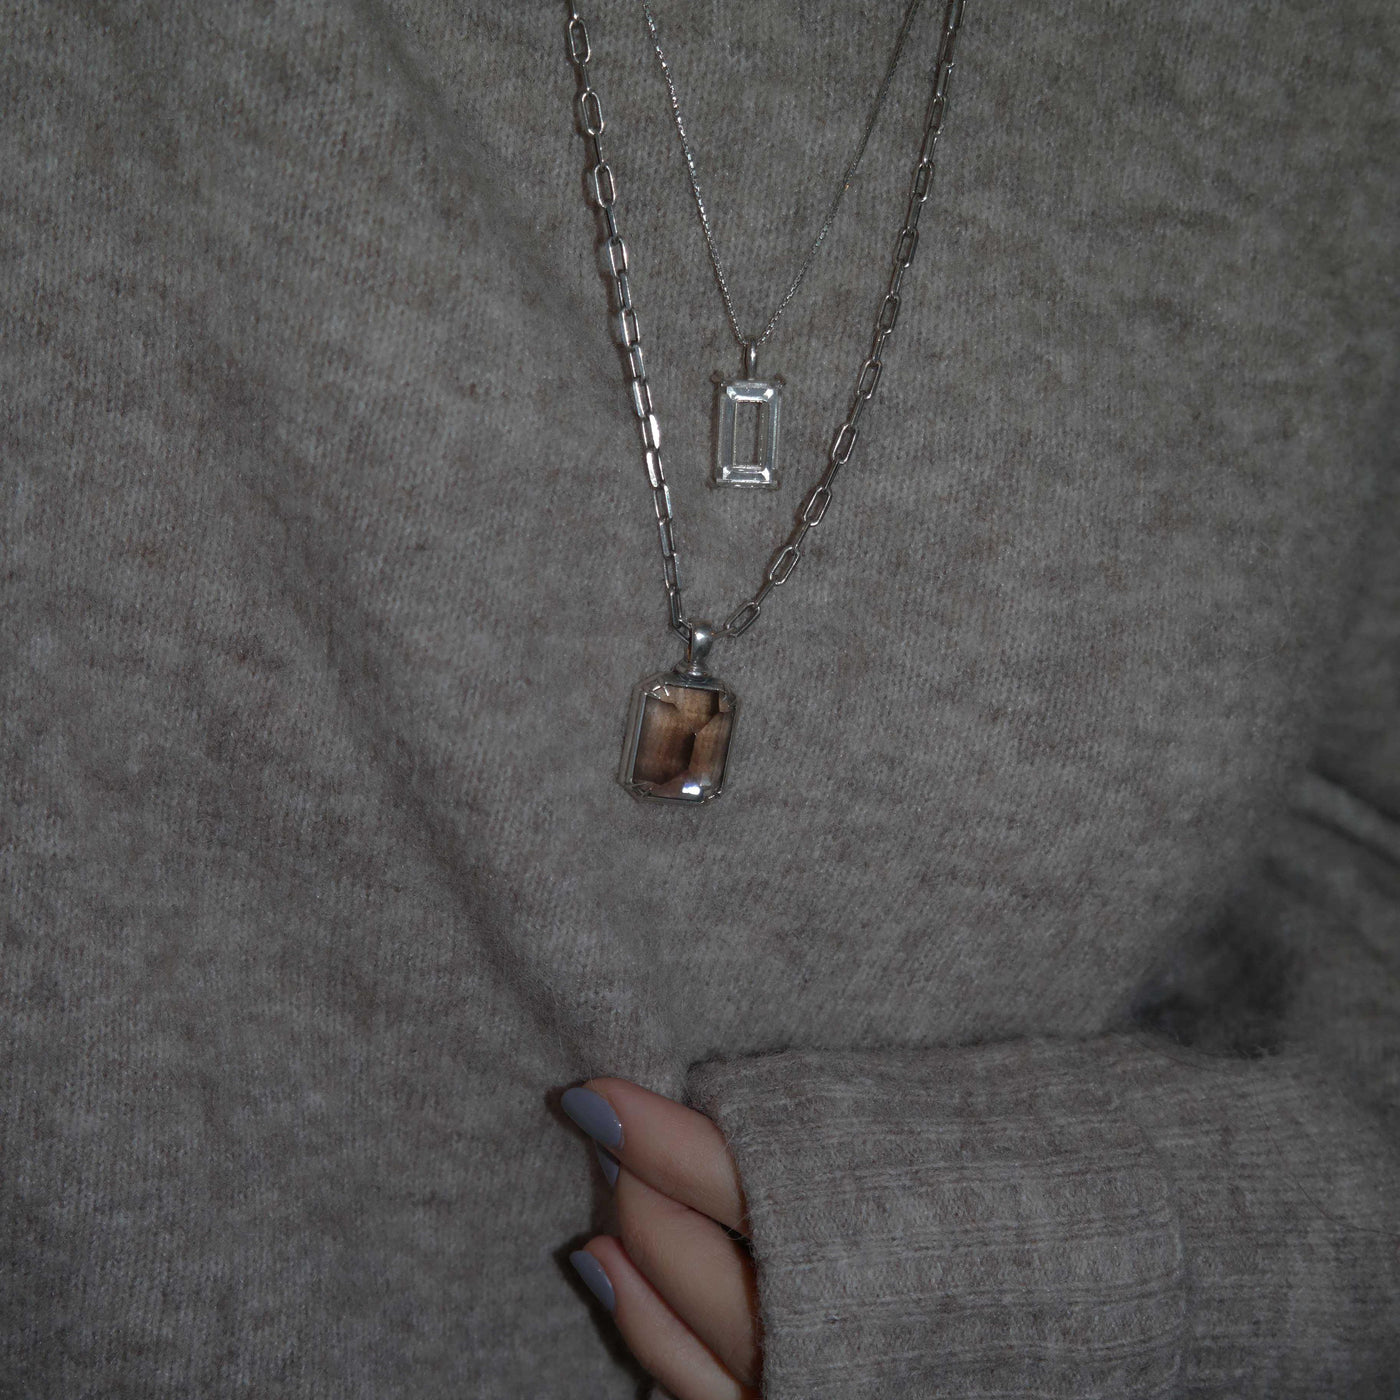 a piece of glass necklace-necklace-SOUHAIT-unigem